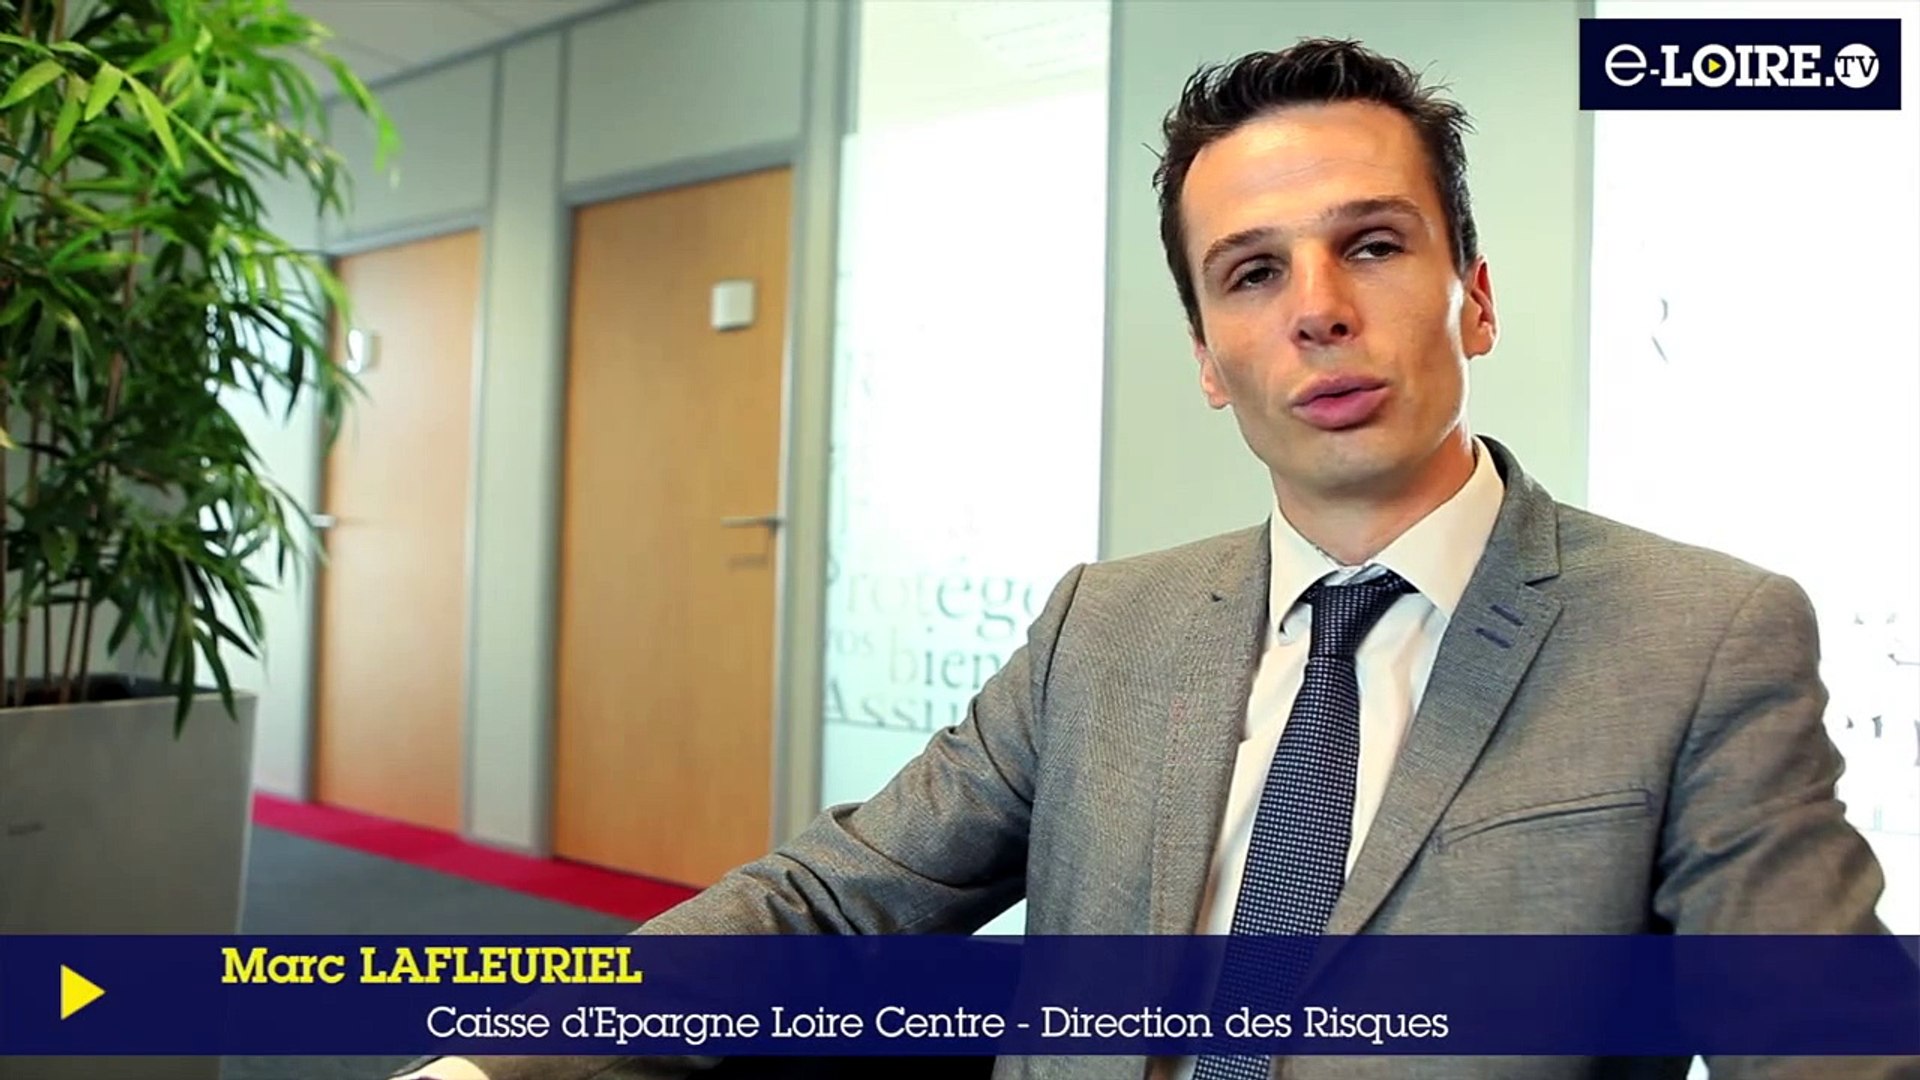 E-Loire.tv le mag'2 - Témoignage de la Caisse d'Epargne Loire Centre -  Vidéo Dailymotion